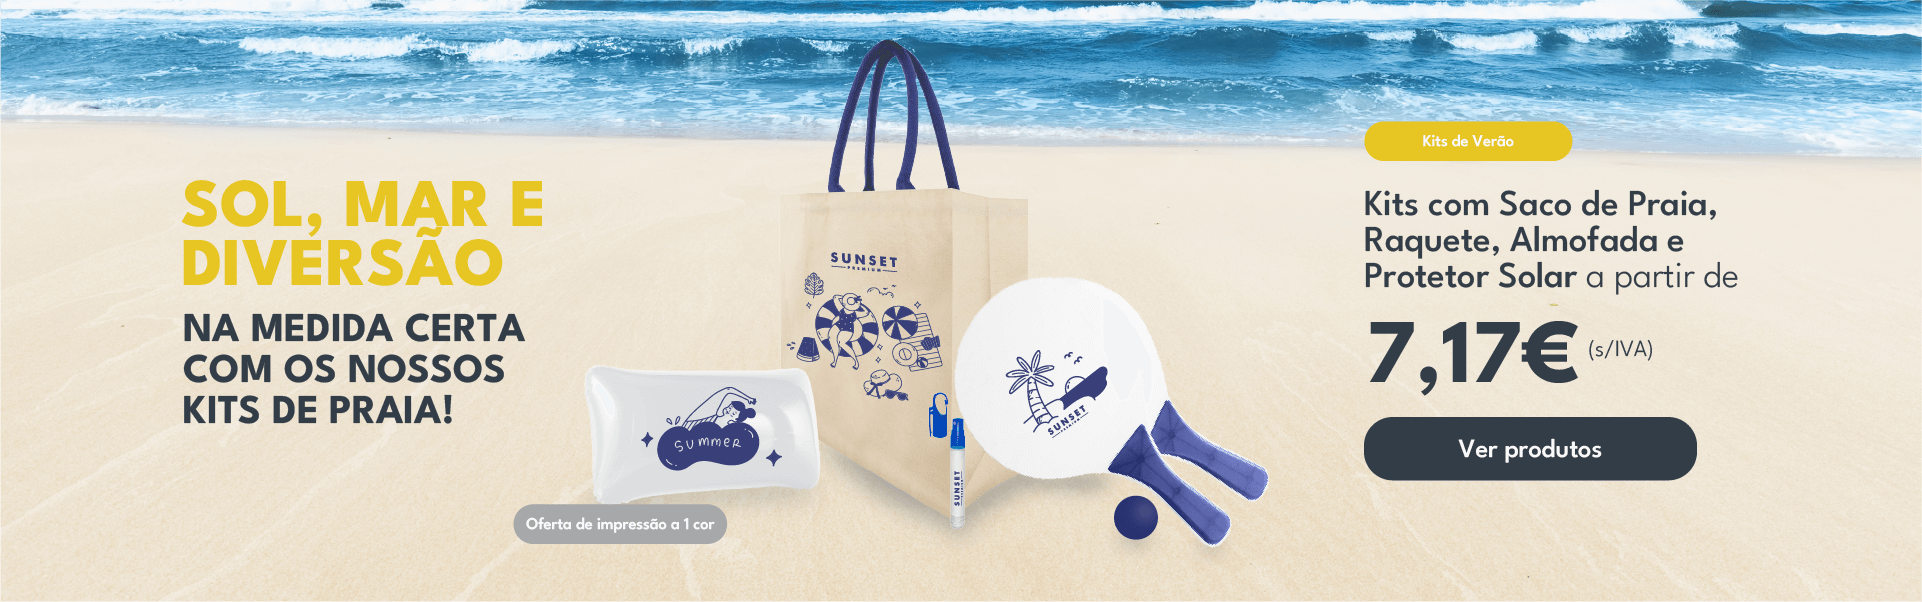 Sol, mar e diversão na medida certa com os nossos kits de praia